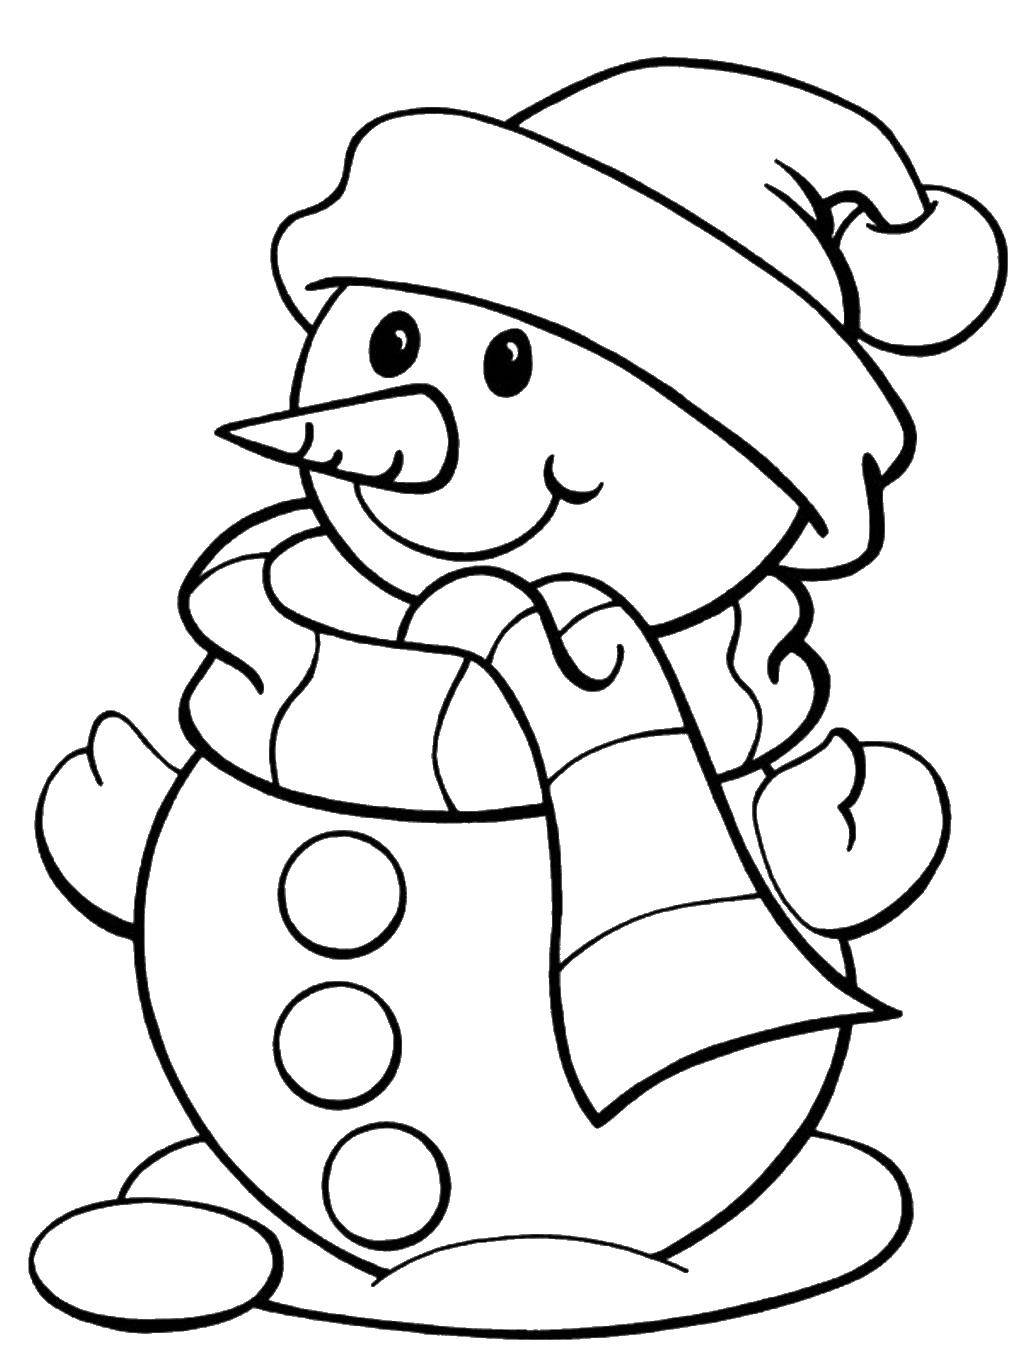 Название: Раскраска Тепло одетый человек. Категория: раскраски зима. Теги: Снеговик, снег, зима.